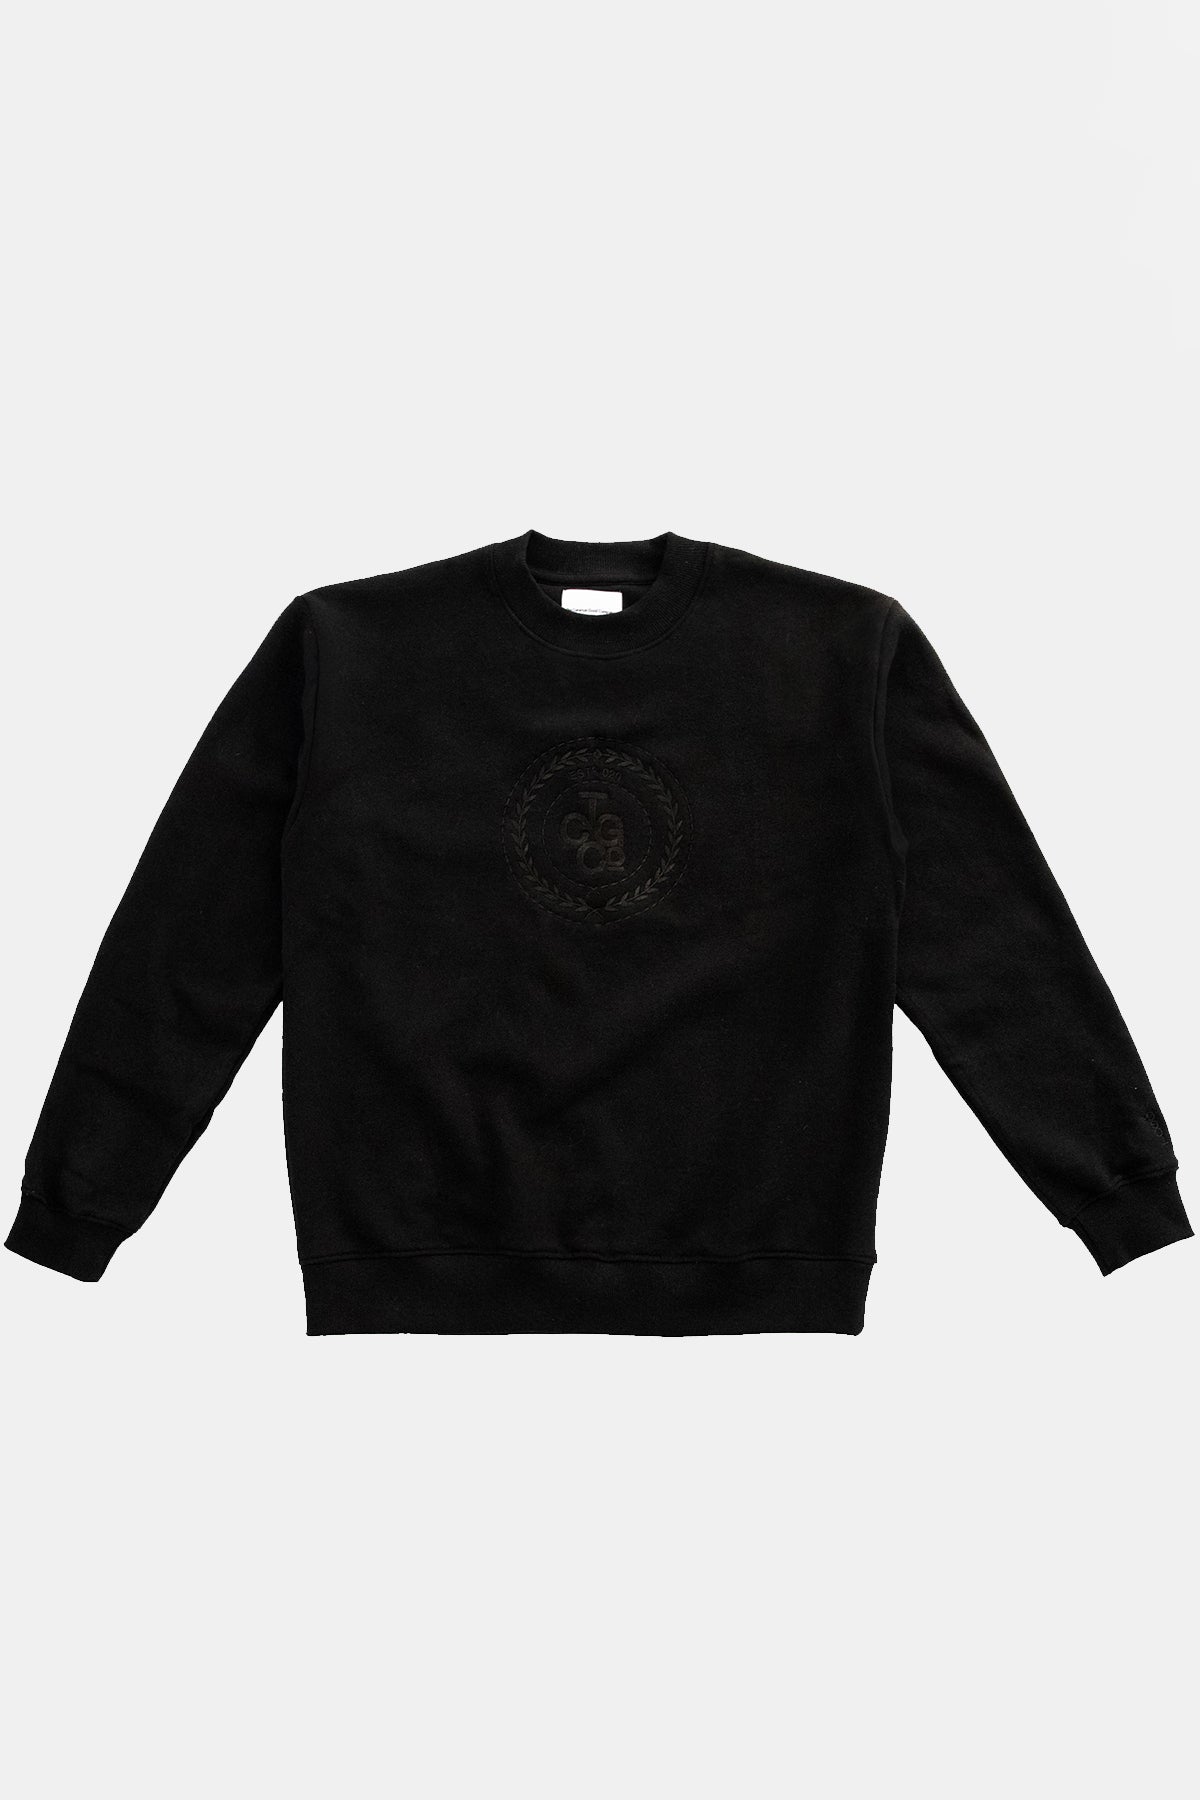 Plain Dane Black Box Fit Sweater - Estd Emblem